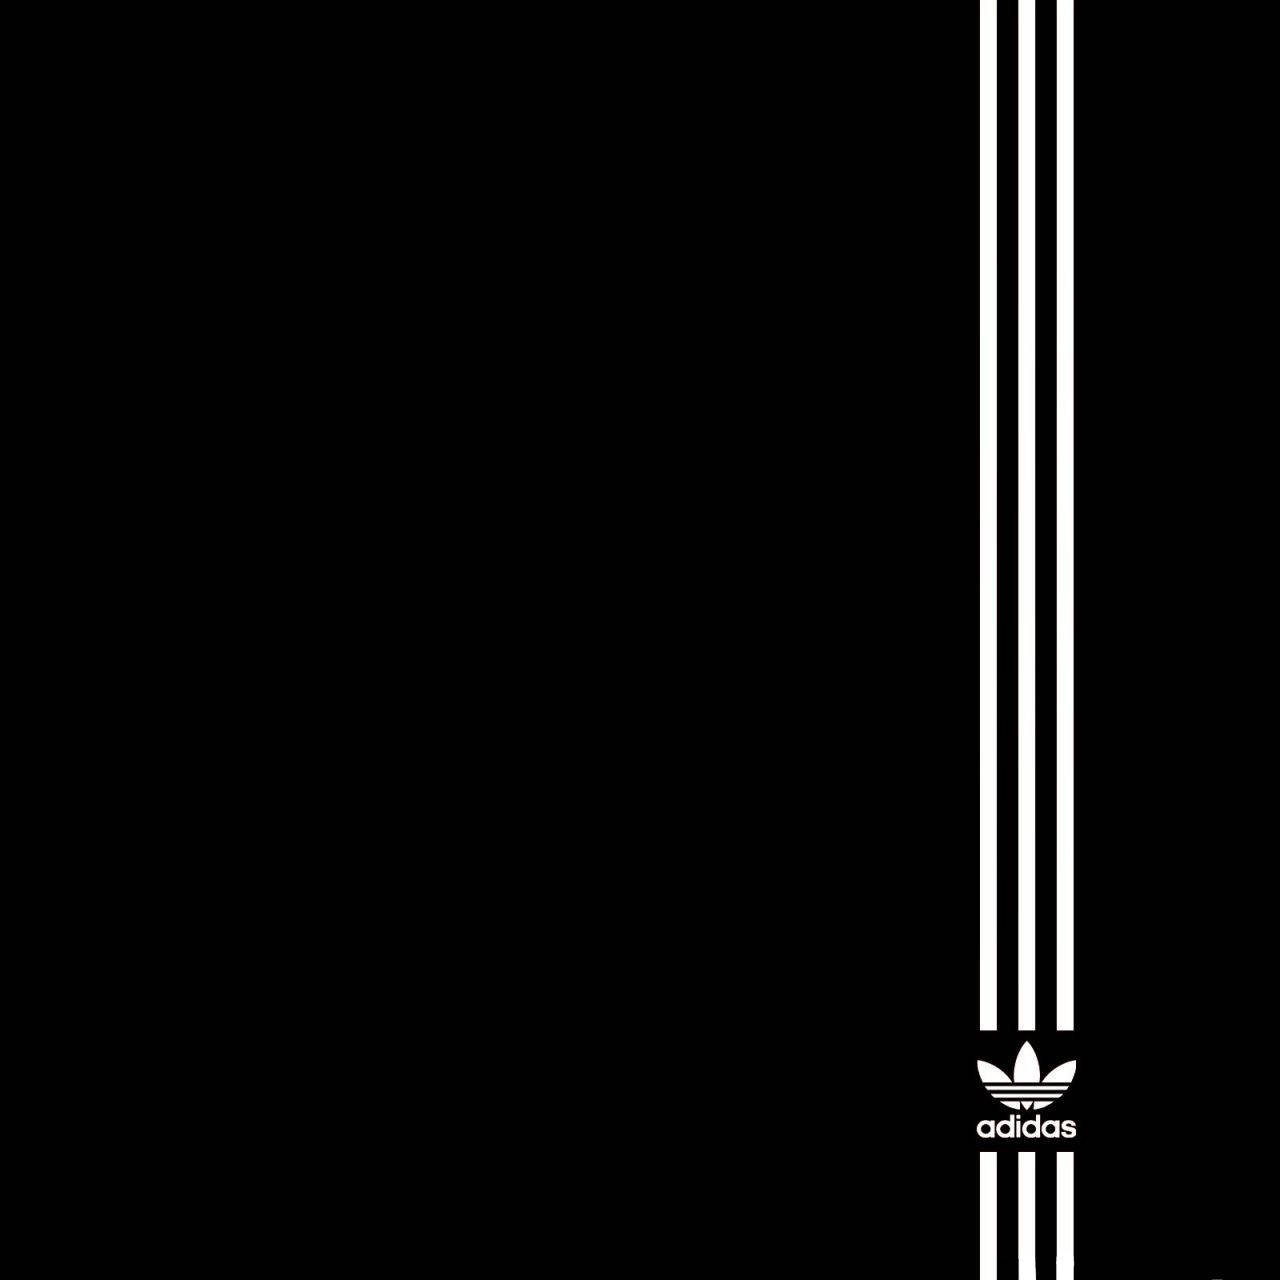 Logotipode Adidas En Negro Intenso Fondo de pantalla